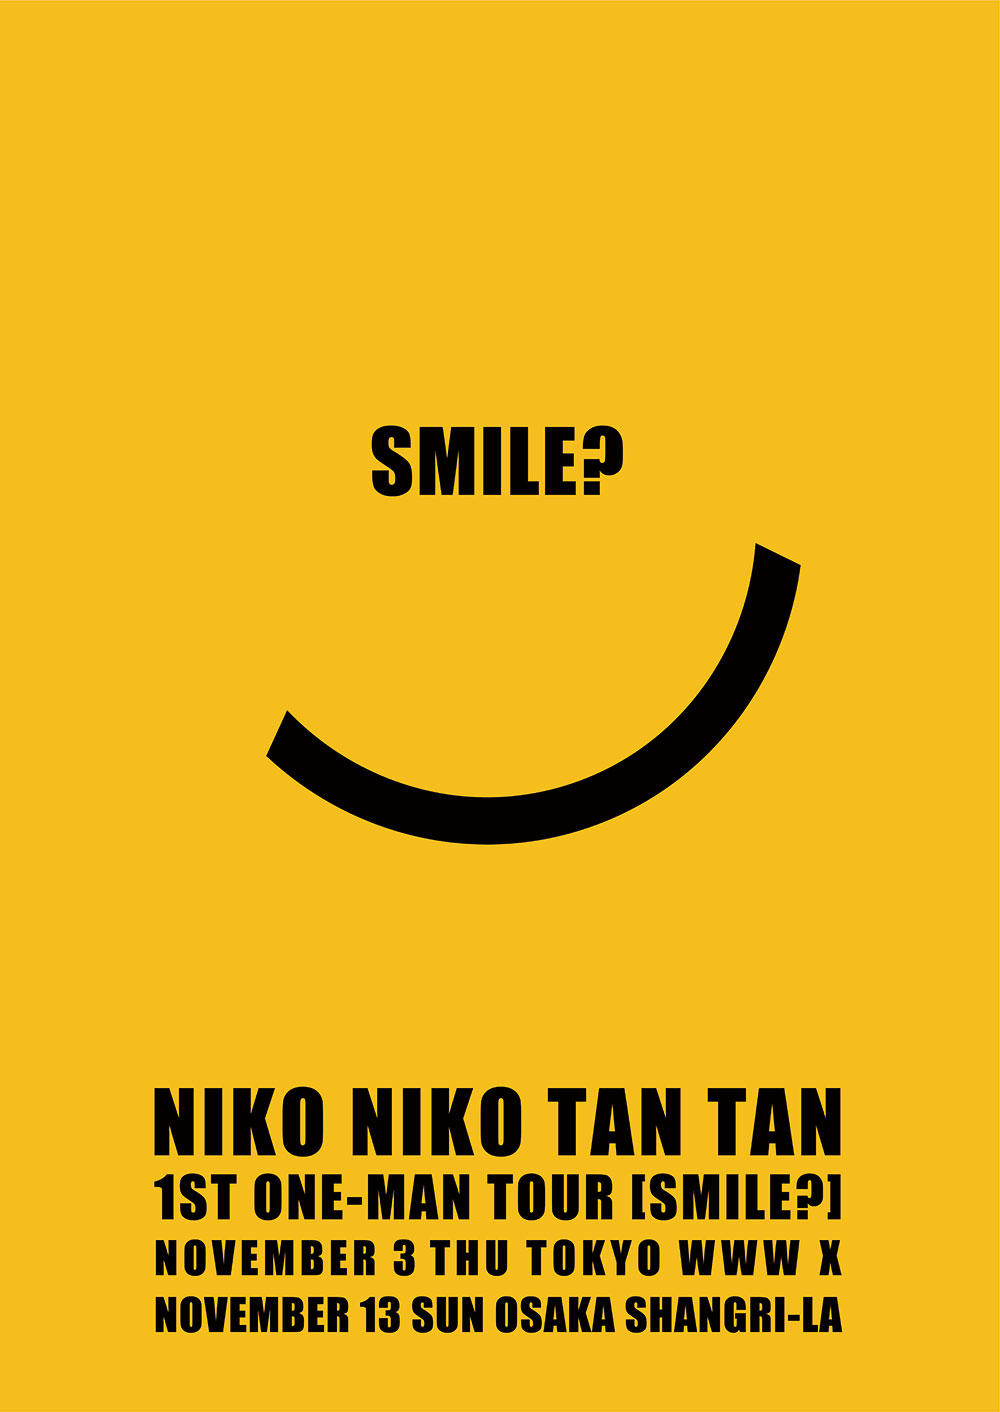 nntt_smile_poster_1000_20221026.jpg